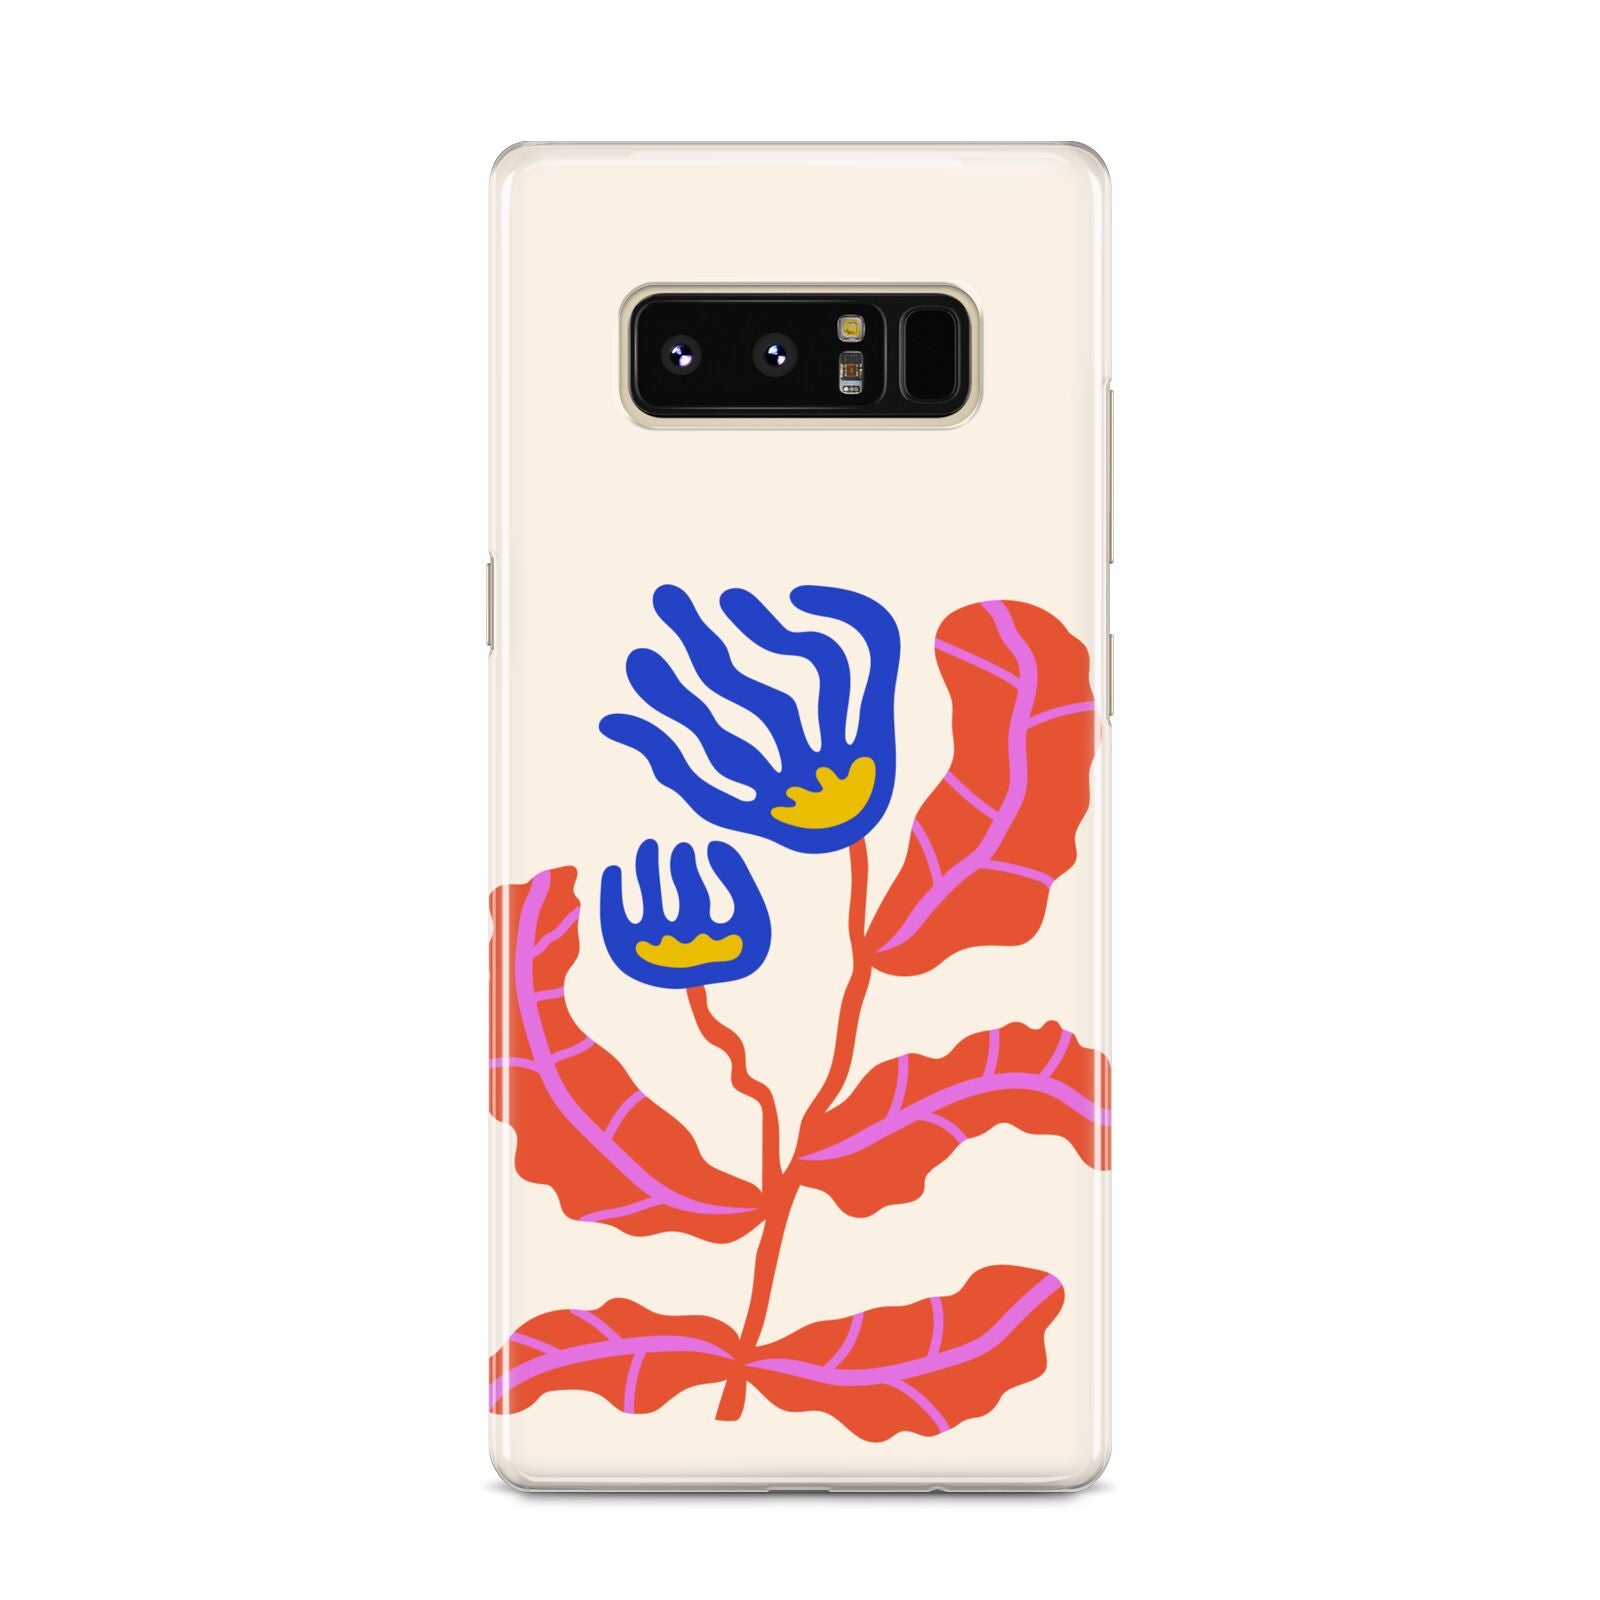 Contemporary Floral Samsung Galaxy S8 Case